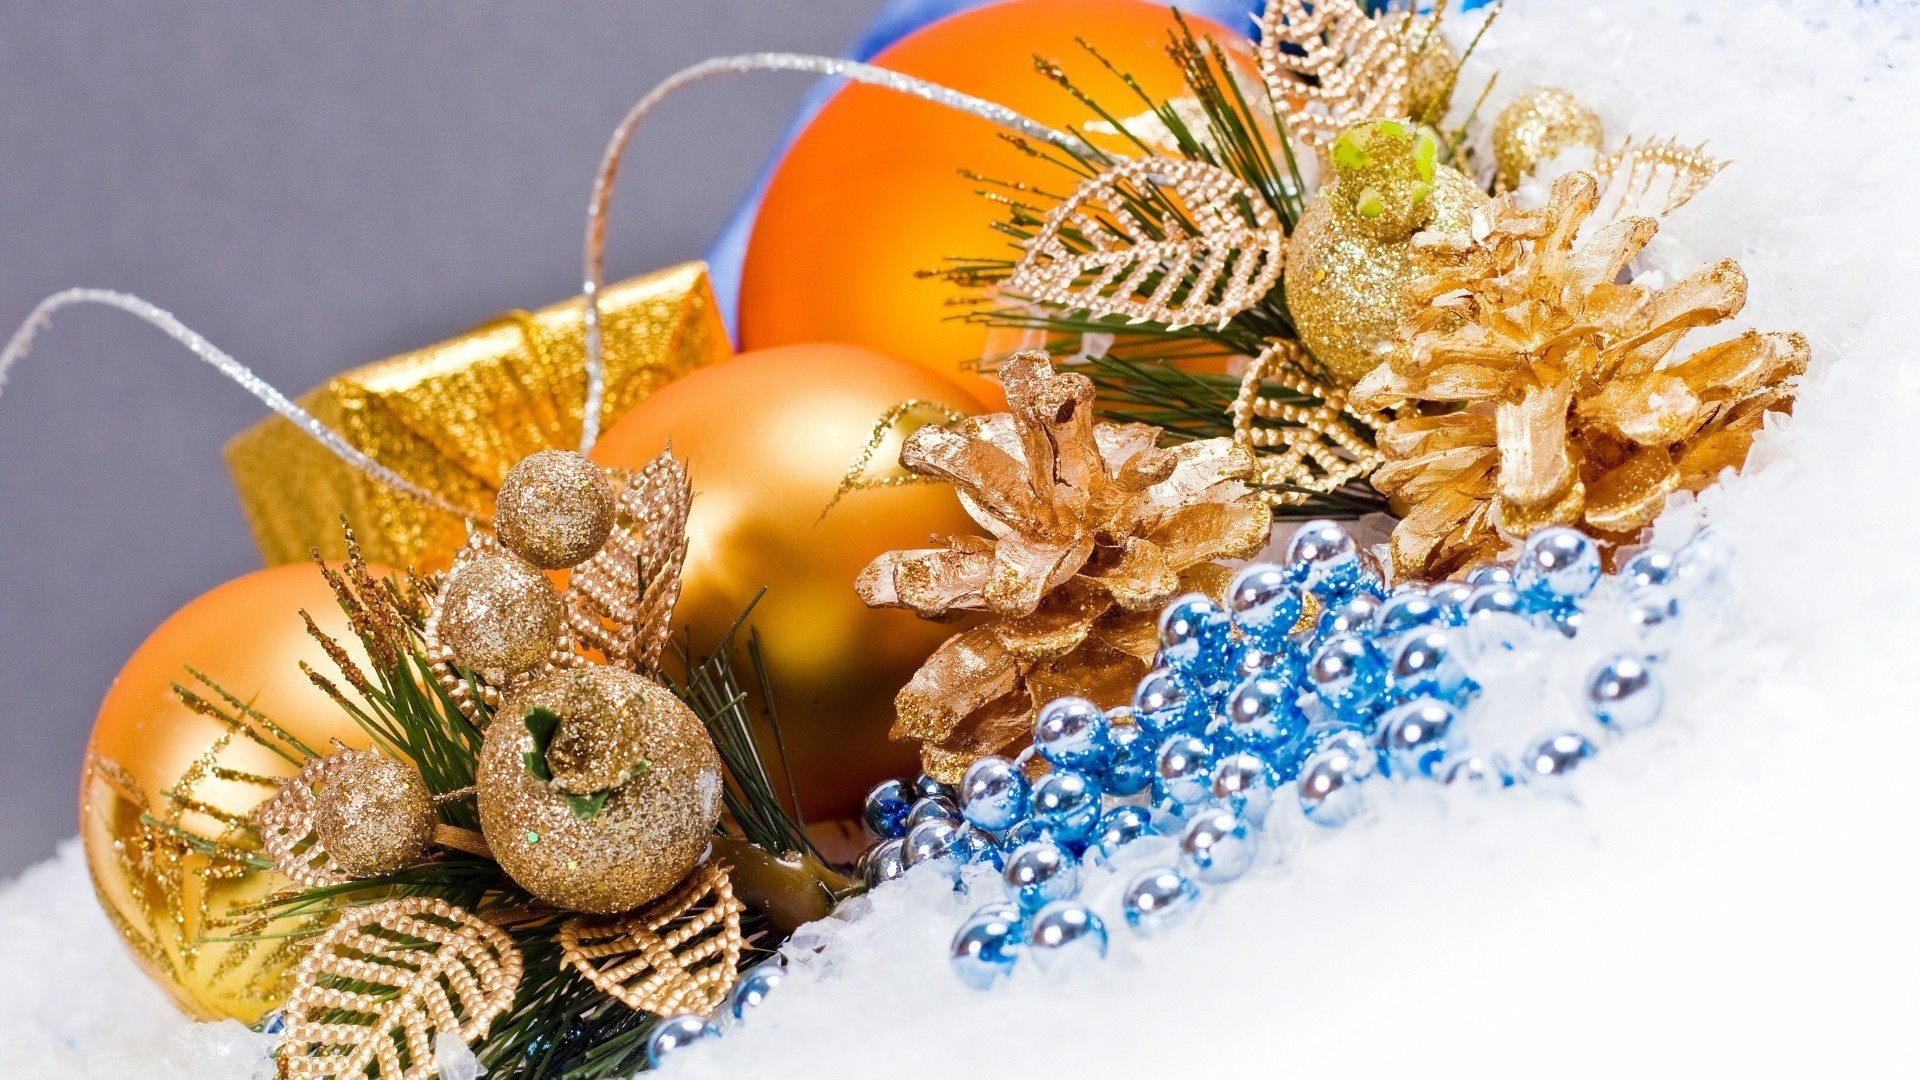 новый год рождество зима украшения праздник золото нить подарок рабочего стола сезон традиционные стекло мерри светит мяч лук крупным планом свет свеча браслет цвет